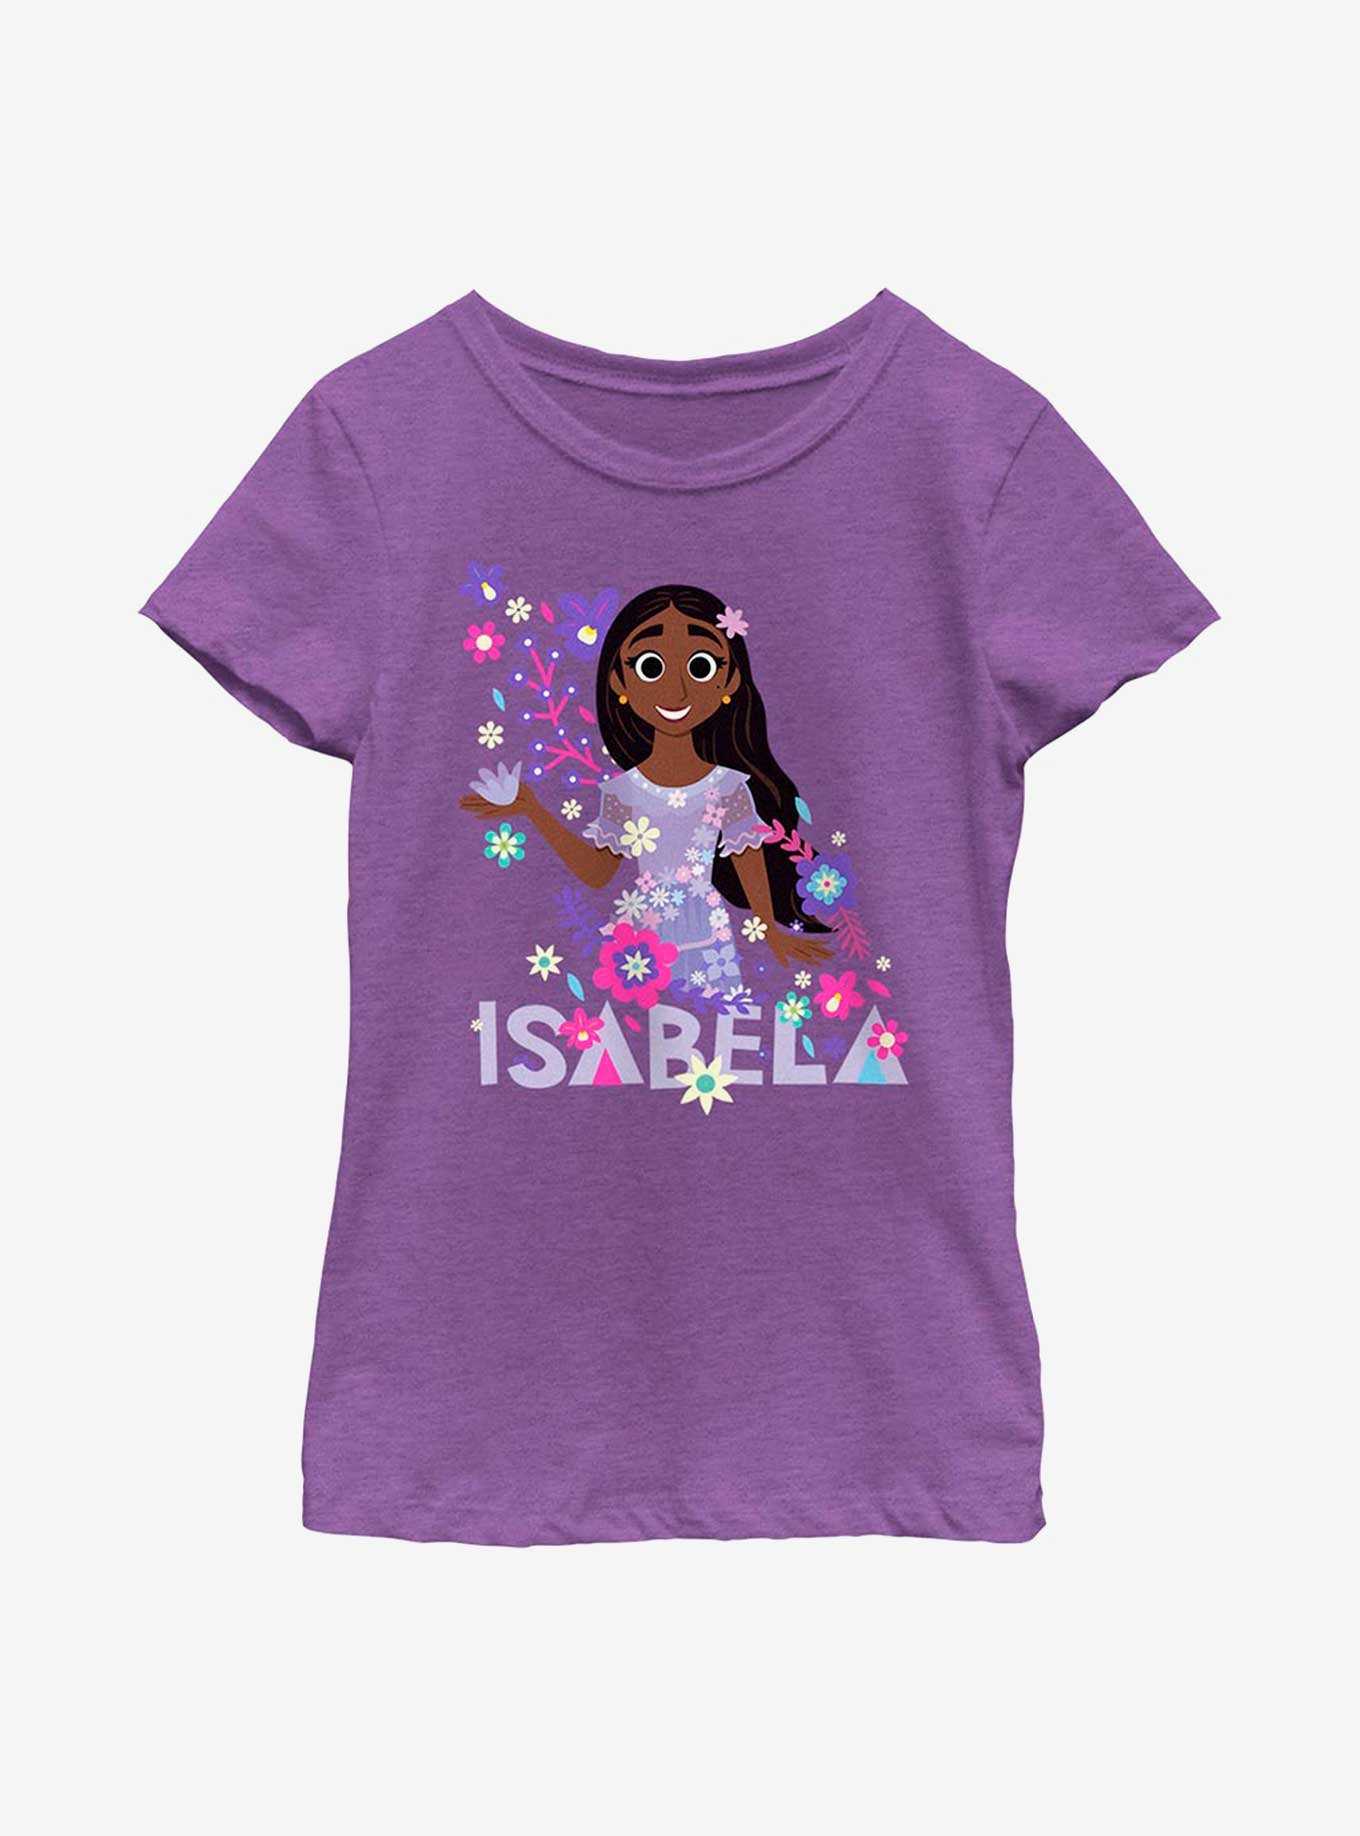 Disney Encanto Isabela Floral Youth Girls T-Shirt, , hi-res